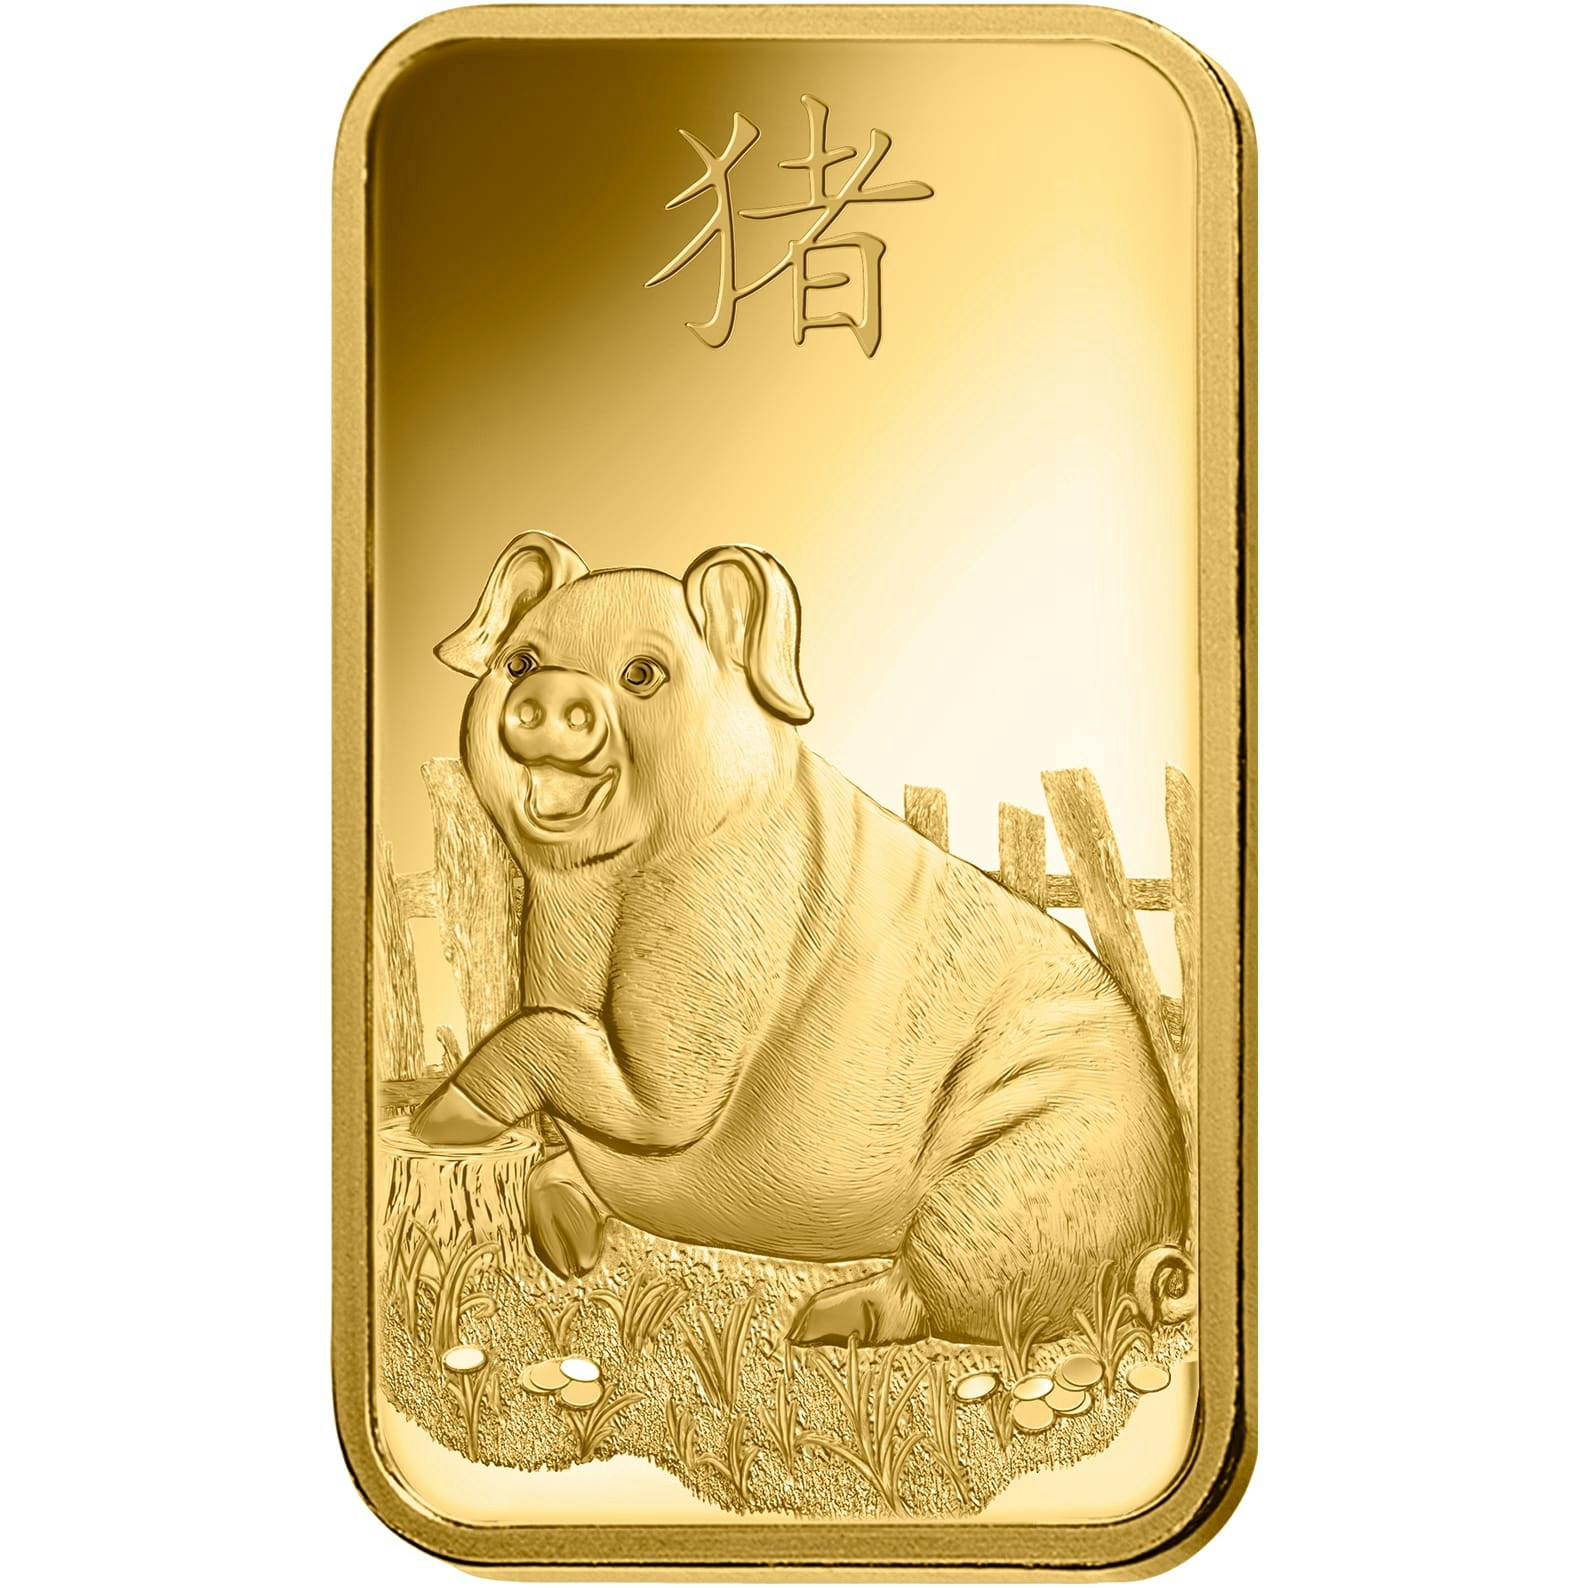 Buy 1 oz Fine gold Lunar Pig - PAMP Swiss - Front